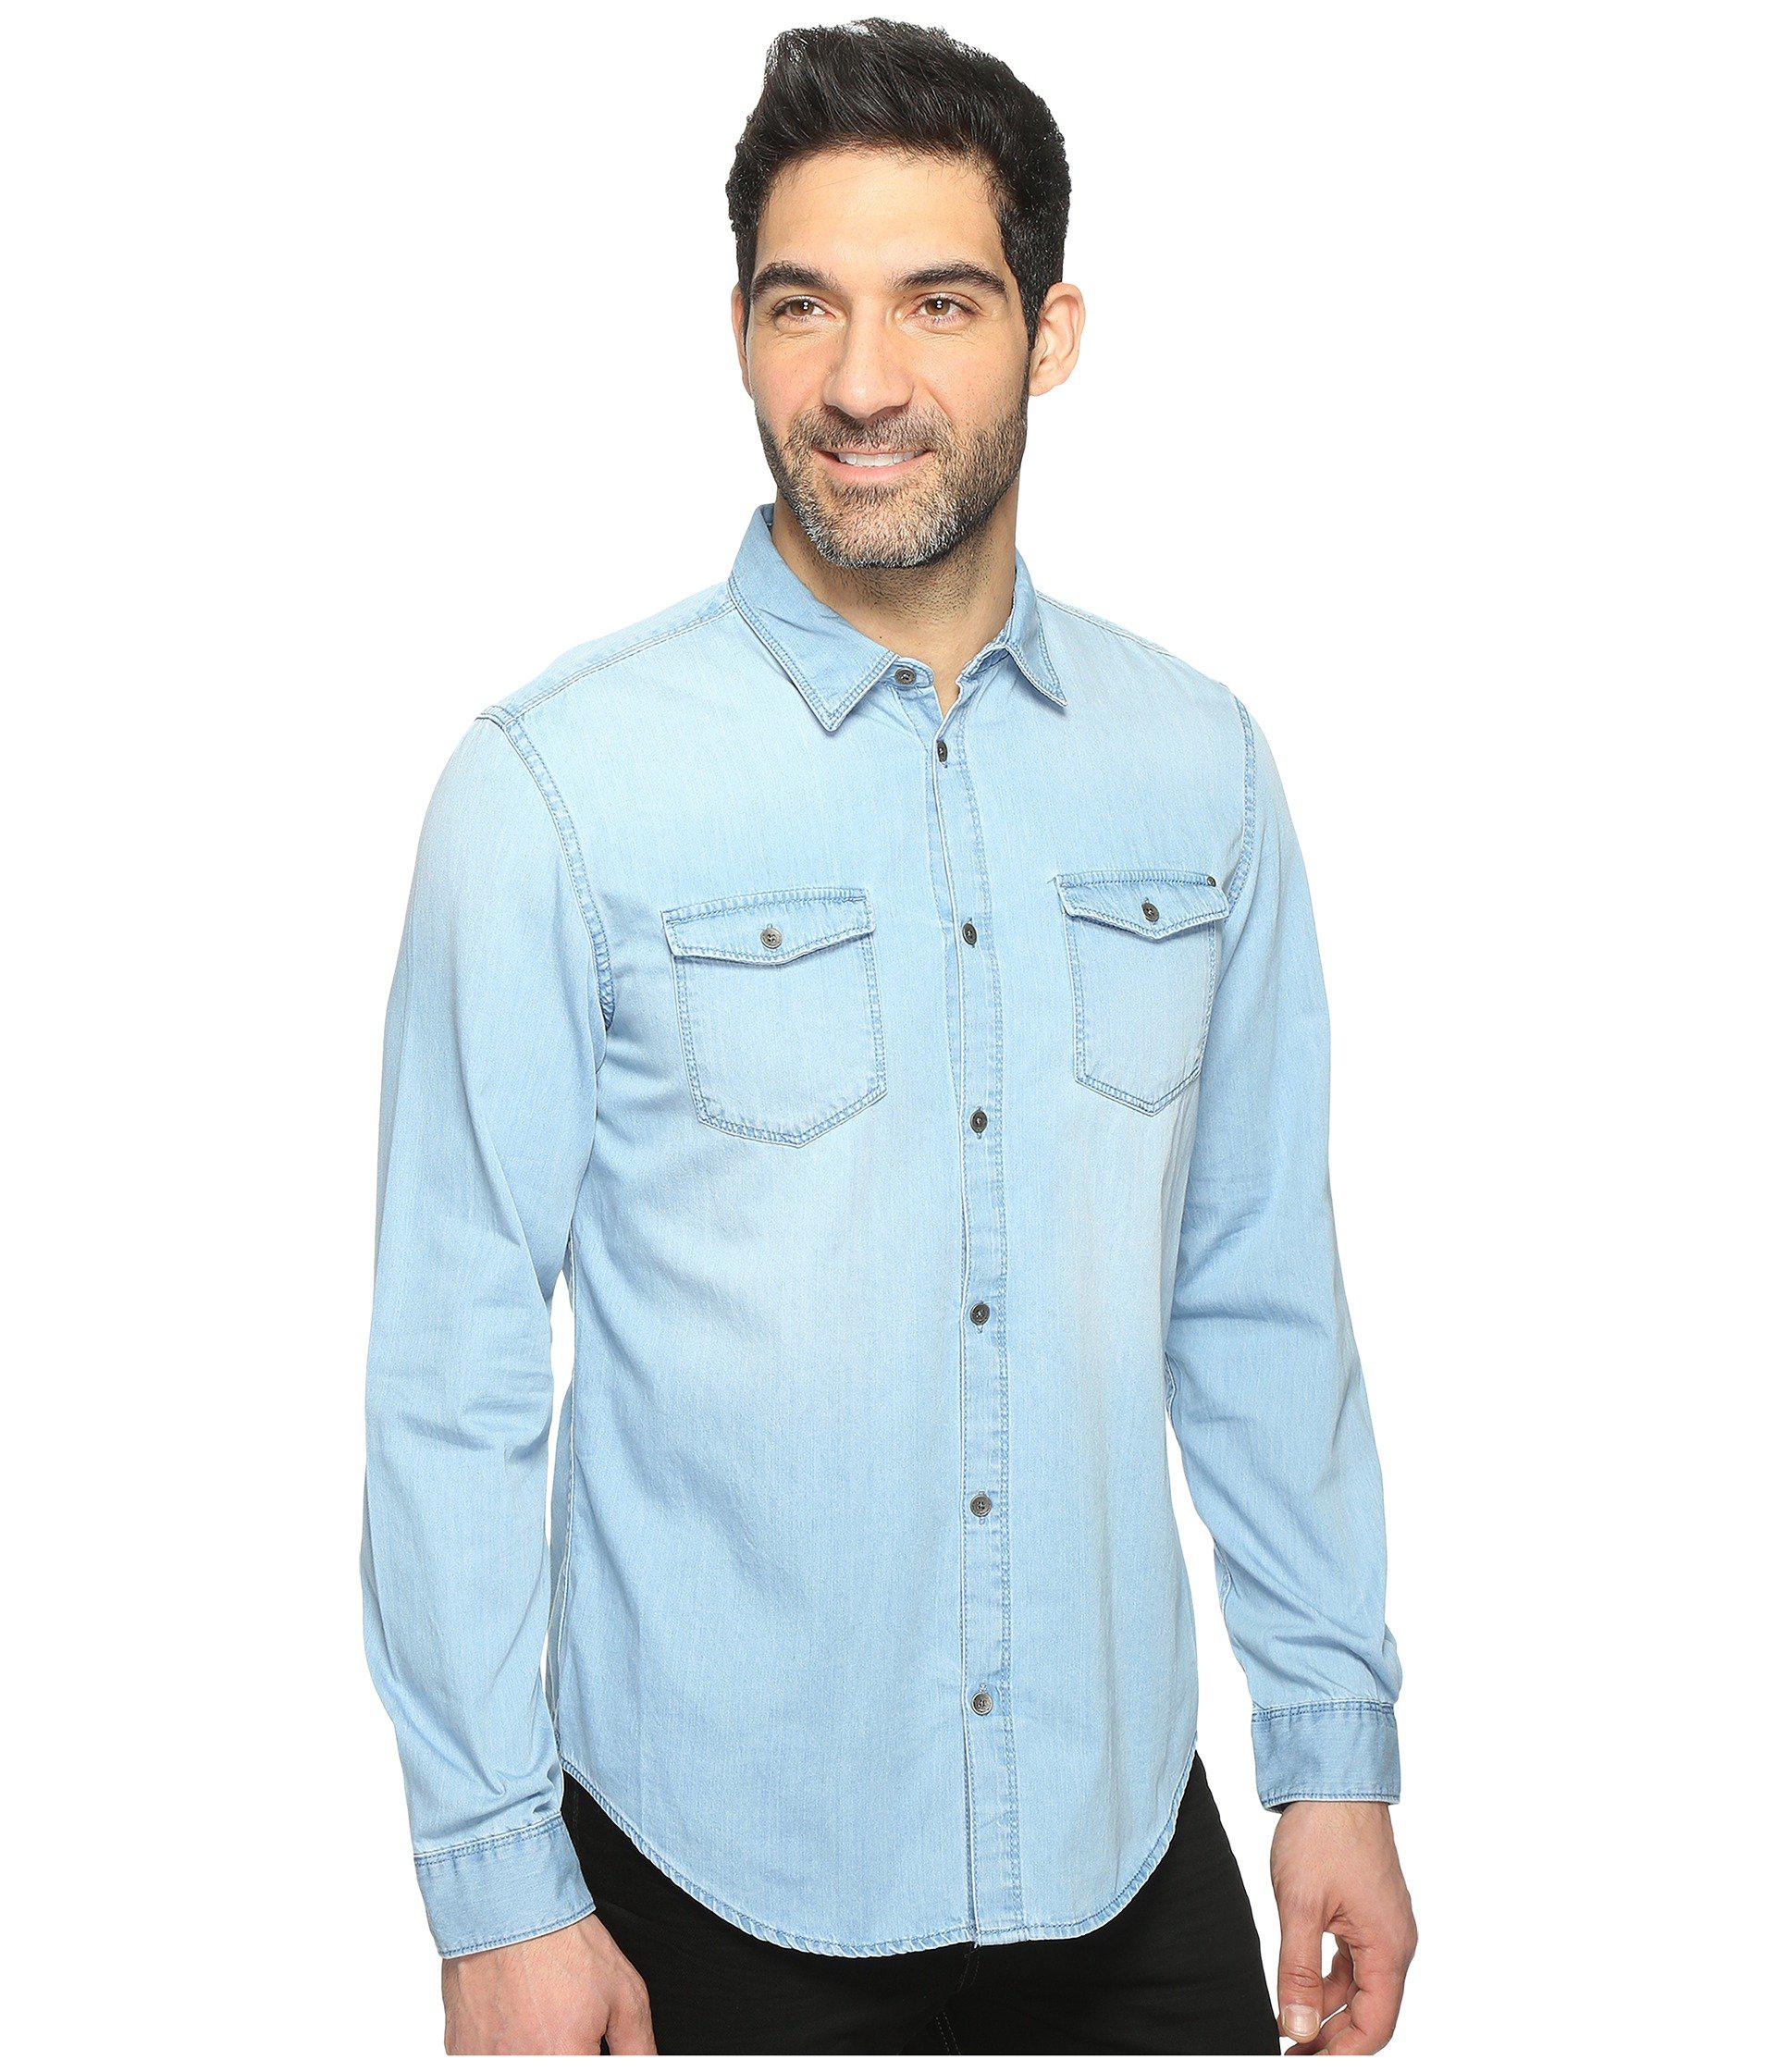 Met andere bands Vergelijken Onderzoek Calvin Klein Denim Shirt (worn Indigo) Men's Clothing in Blue for Men | Lyst